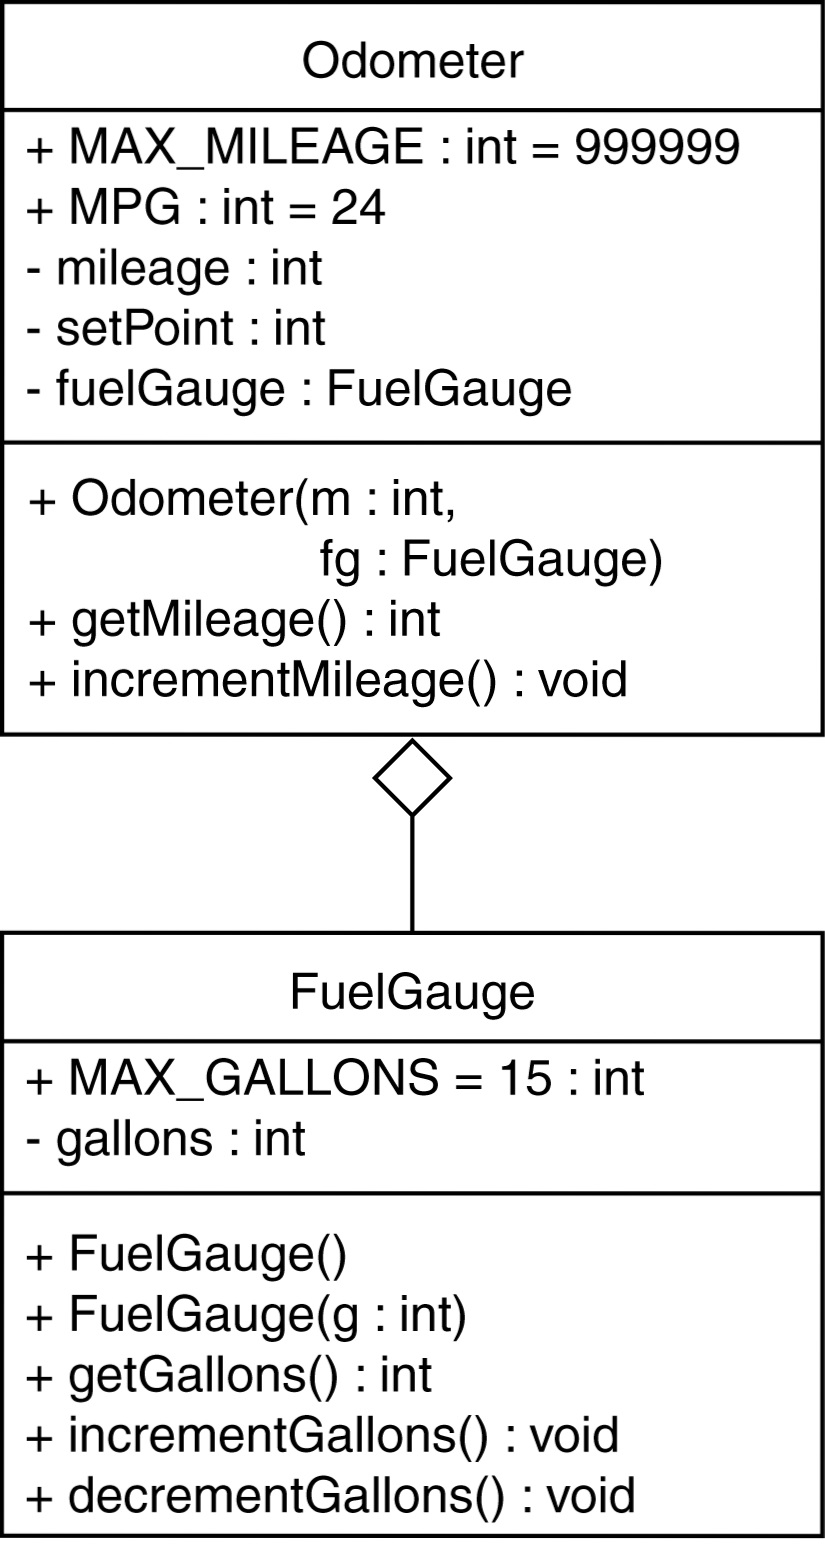 Odometer + MAX_MILEAGE : int - 999999 + MPG : int = 24 - mileage : int setPOint: int fuelGauge : FuelGauge + Odometer(m : int, + getMileage() : int fg : FuelGauge) + incrementMileage: void FuelGauge + MAXGALLONS = 15 : int - gallons : int - + FuelGauge() + FuelGauge(g : int) + getGallons): int + incrementGallons) : void + decrementGallons) void